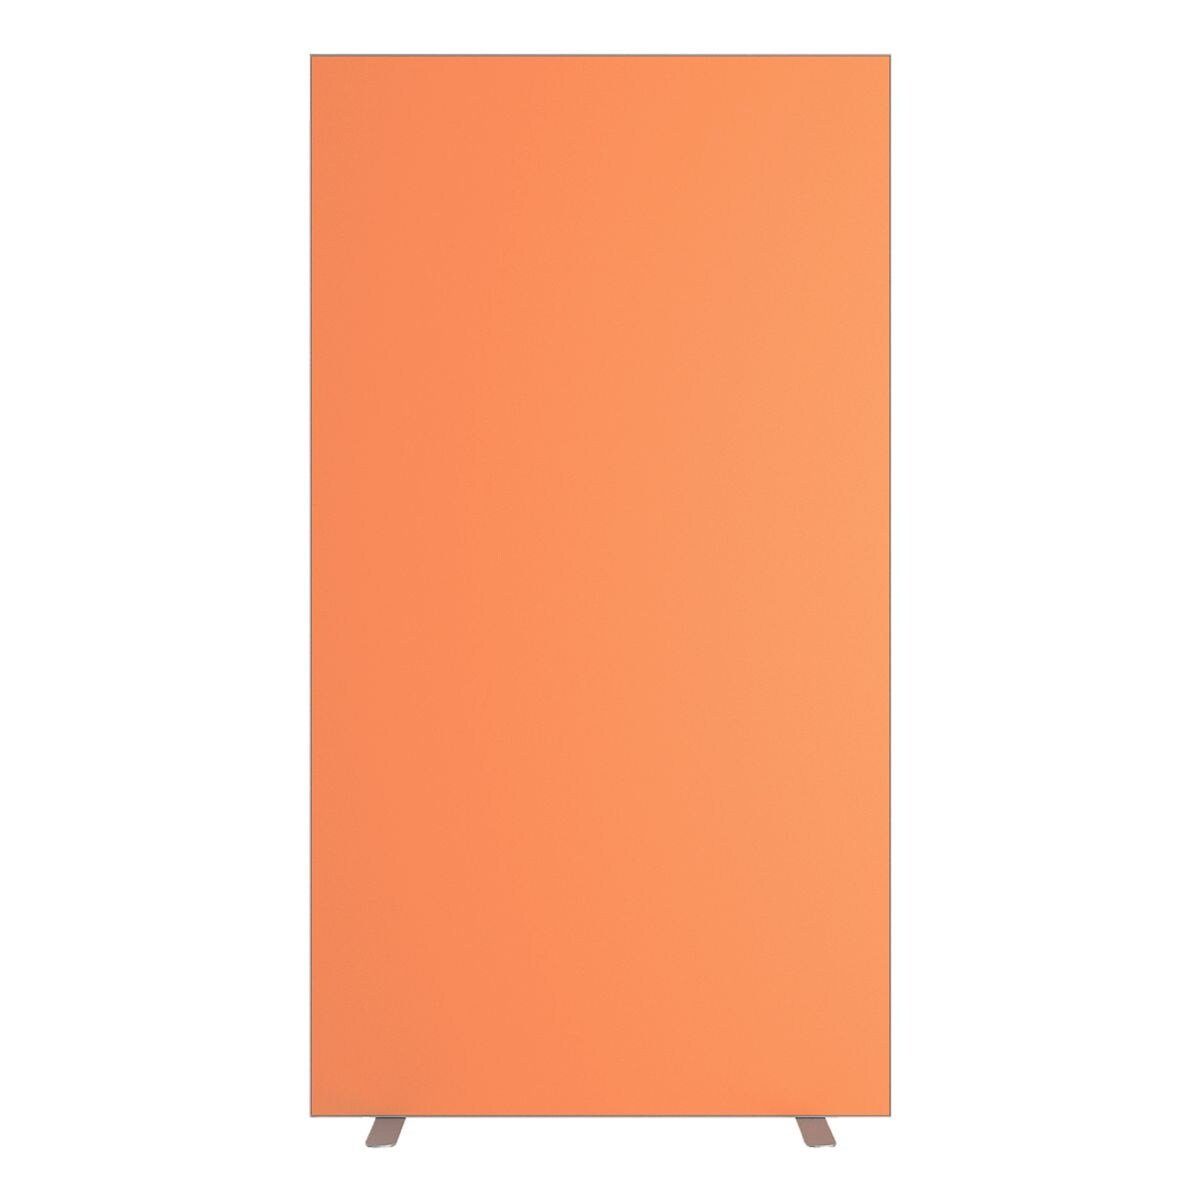 PAPERFLOW Stellwand orange schwer in easyScreen, Qualität, Stoff entflammbar M1